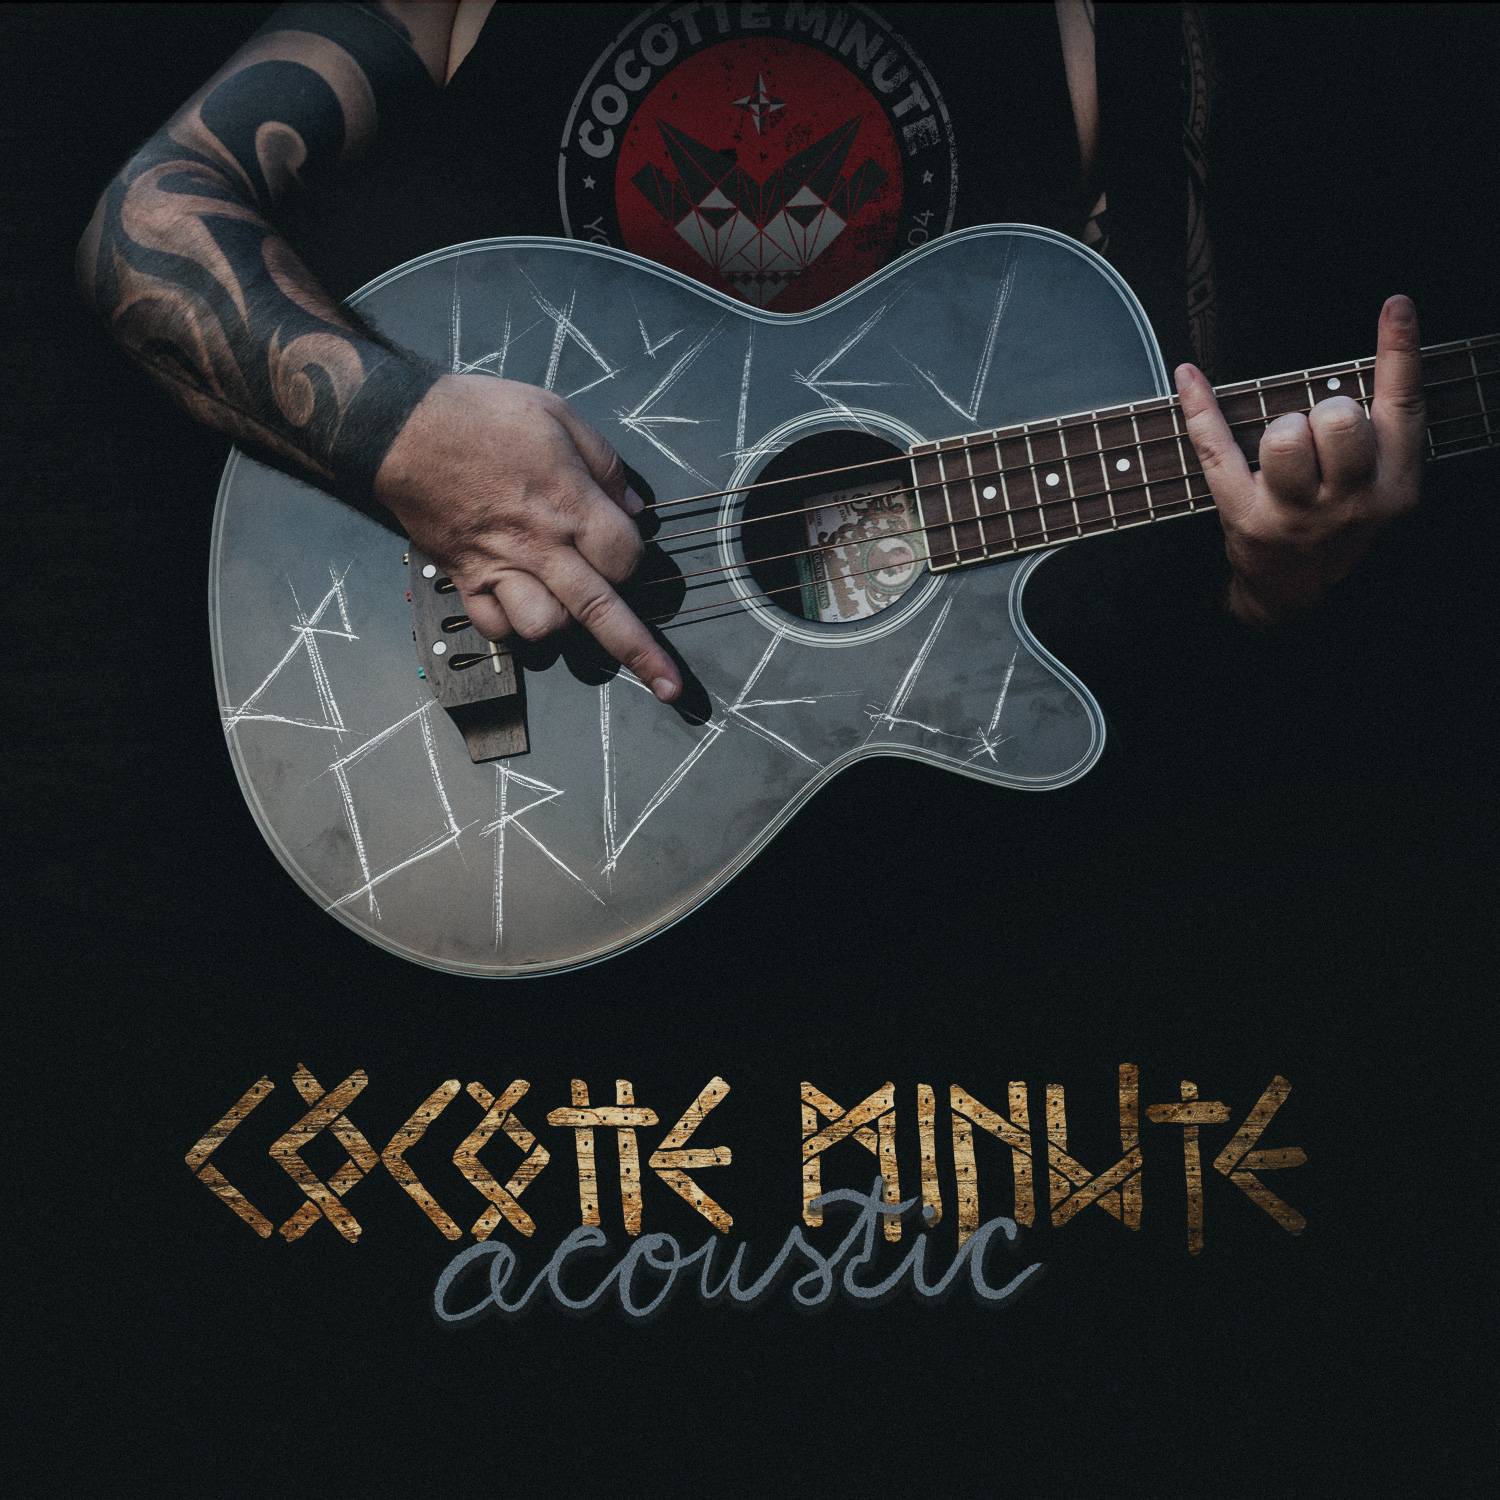 SOUTĚŽ: Cocotte Minute acoustic tour